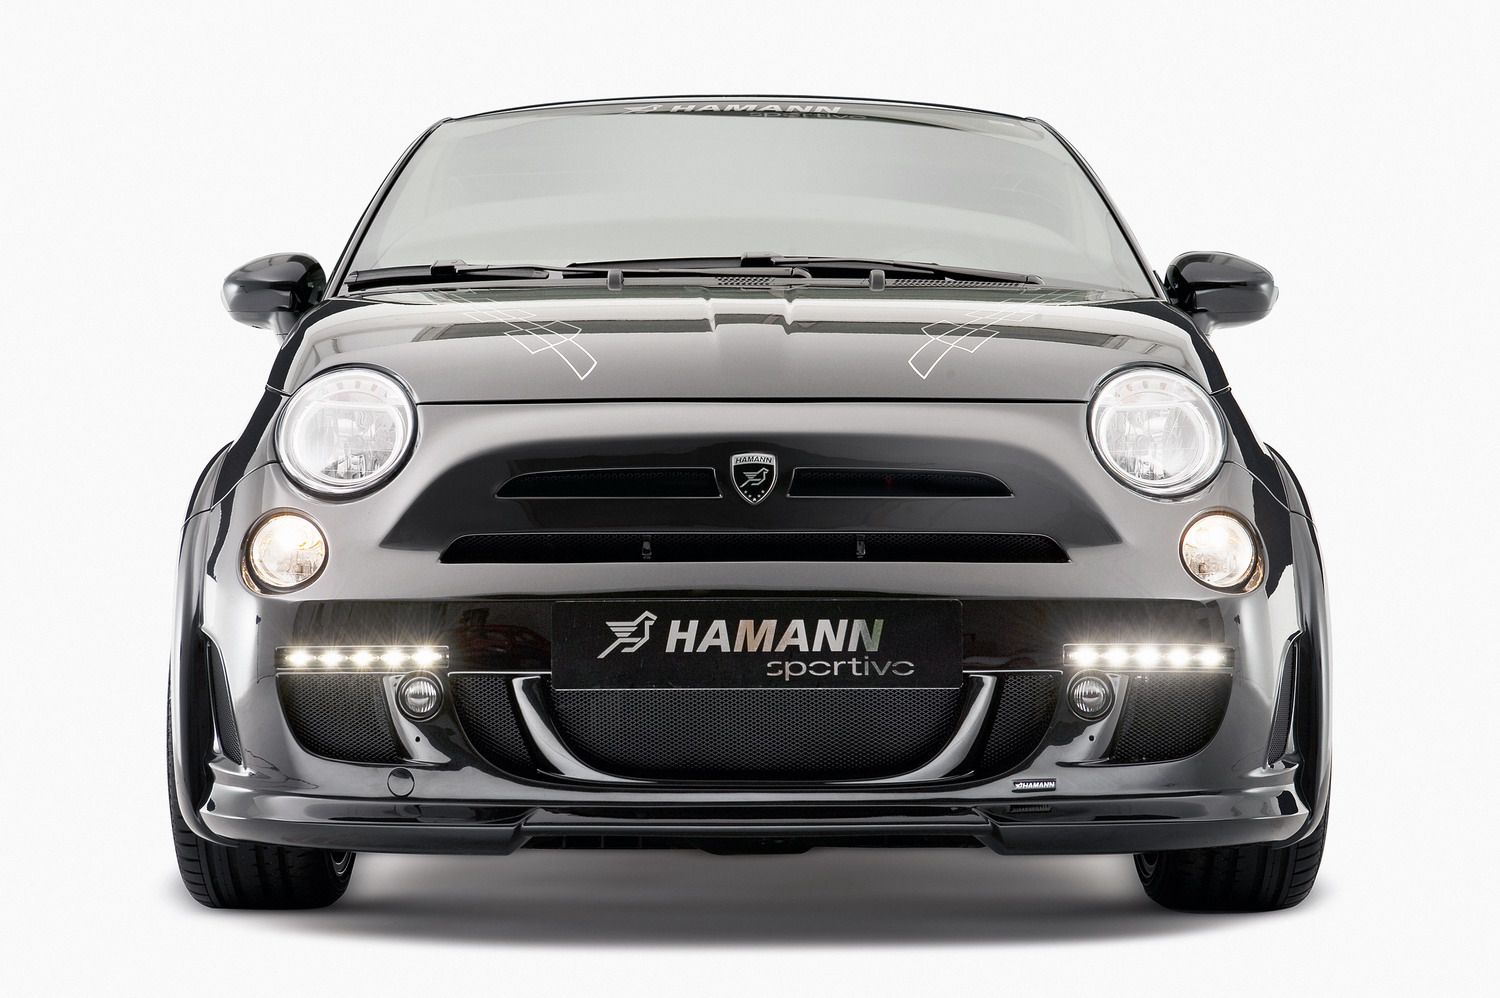 2013 Fiat 500 Sportivo by Hamann